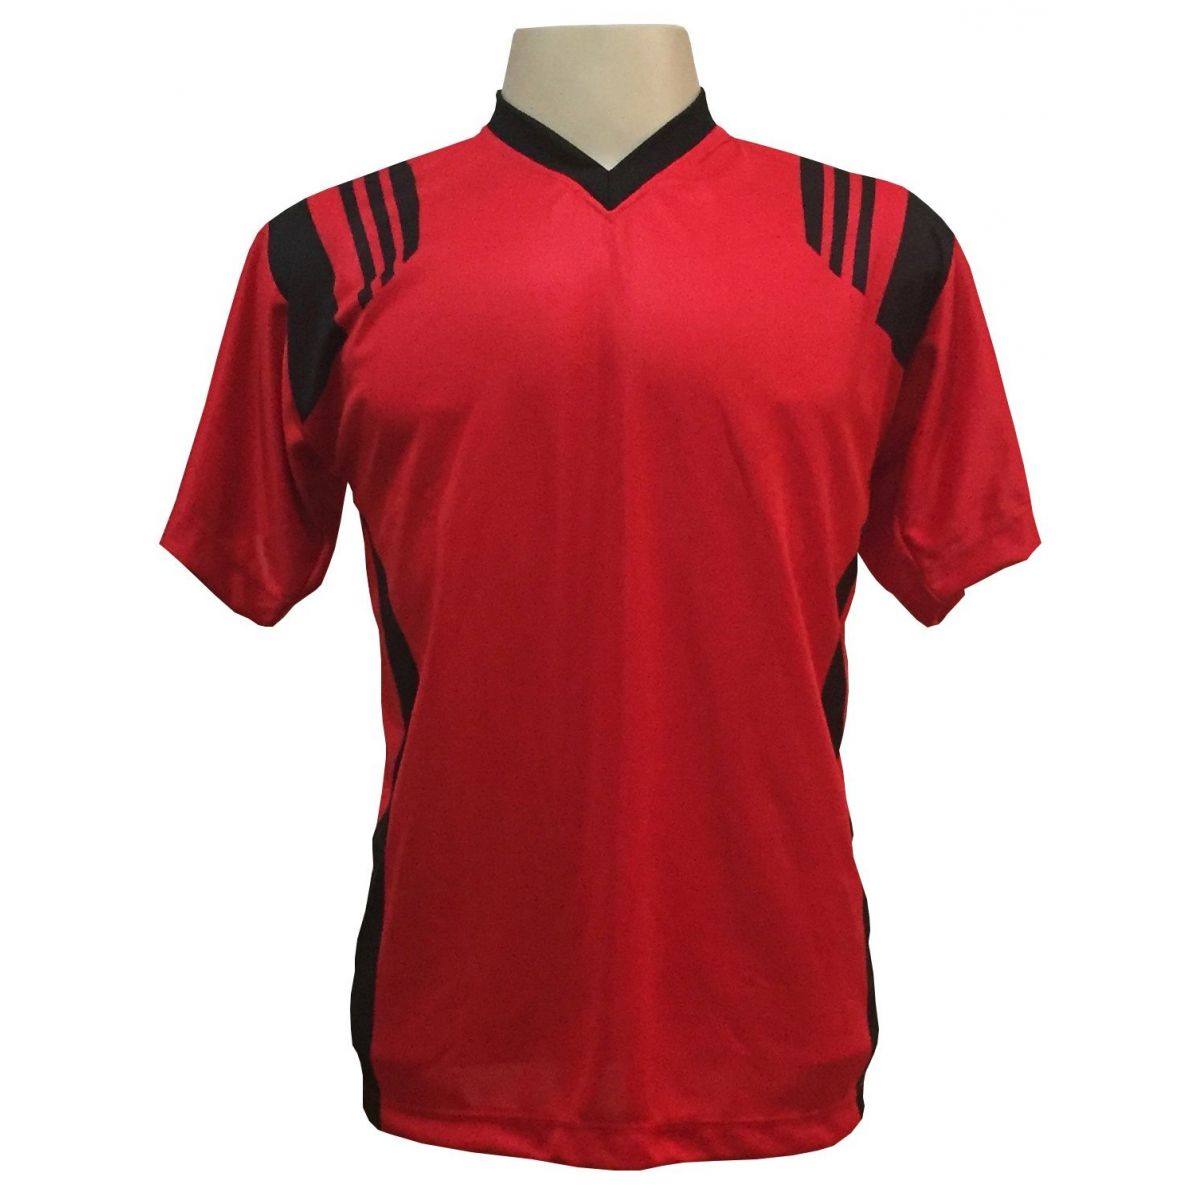 Uniforme Esportivo com 18 camisas modelo modelo Roma Vermelho/Preto + 18 calções modelo Copa + 1 Goleiro + Brindes